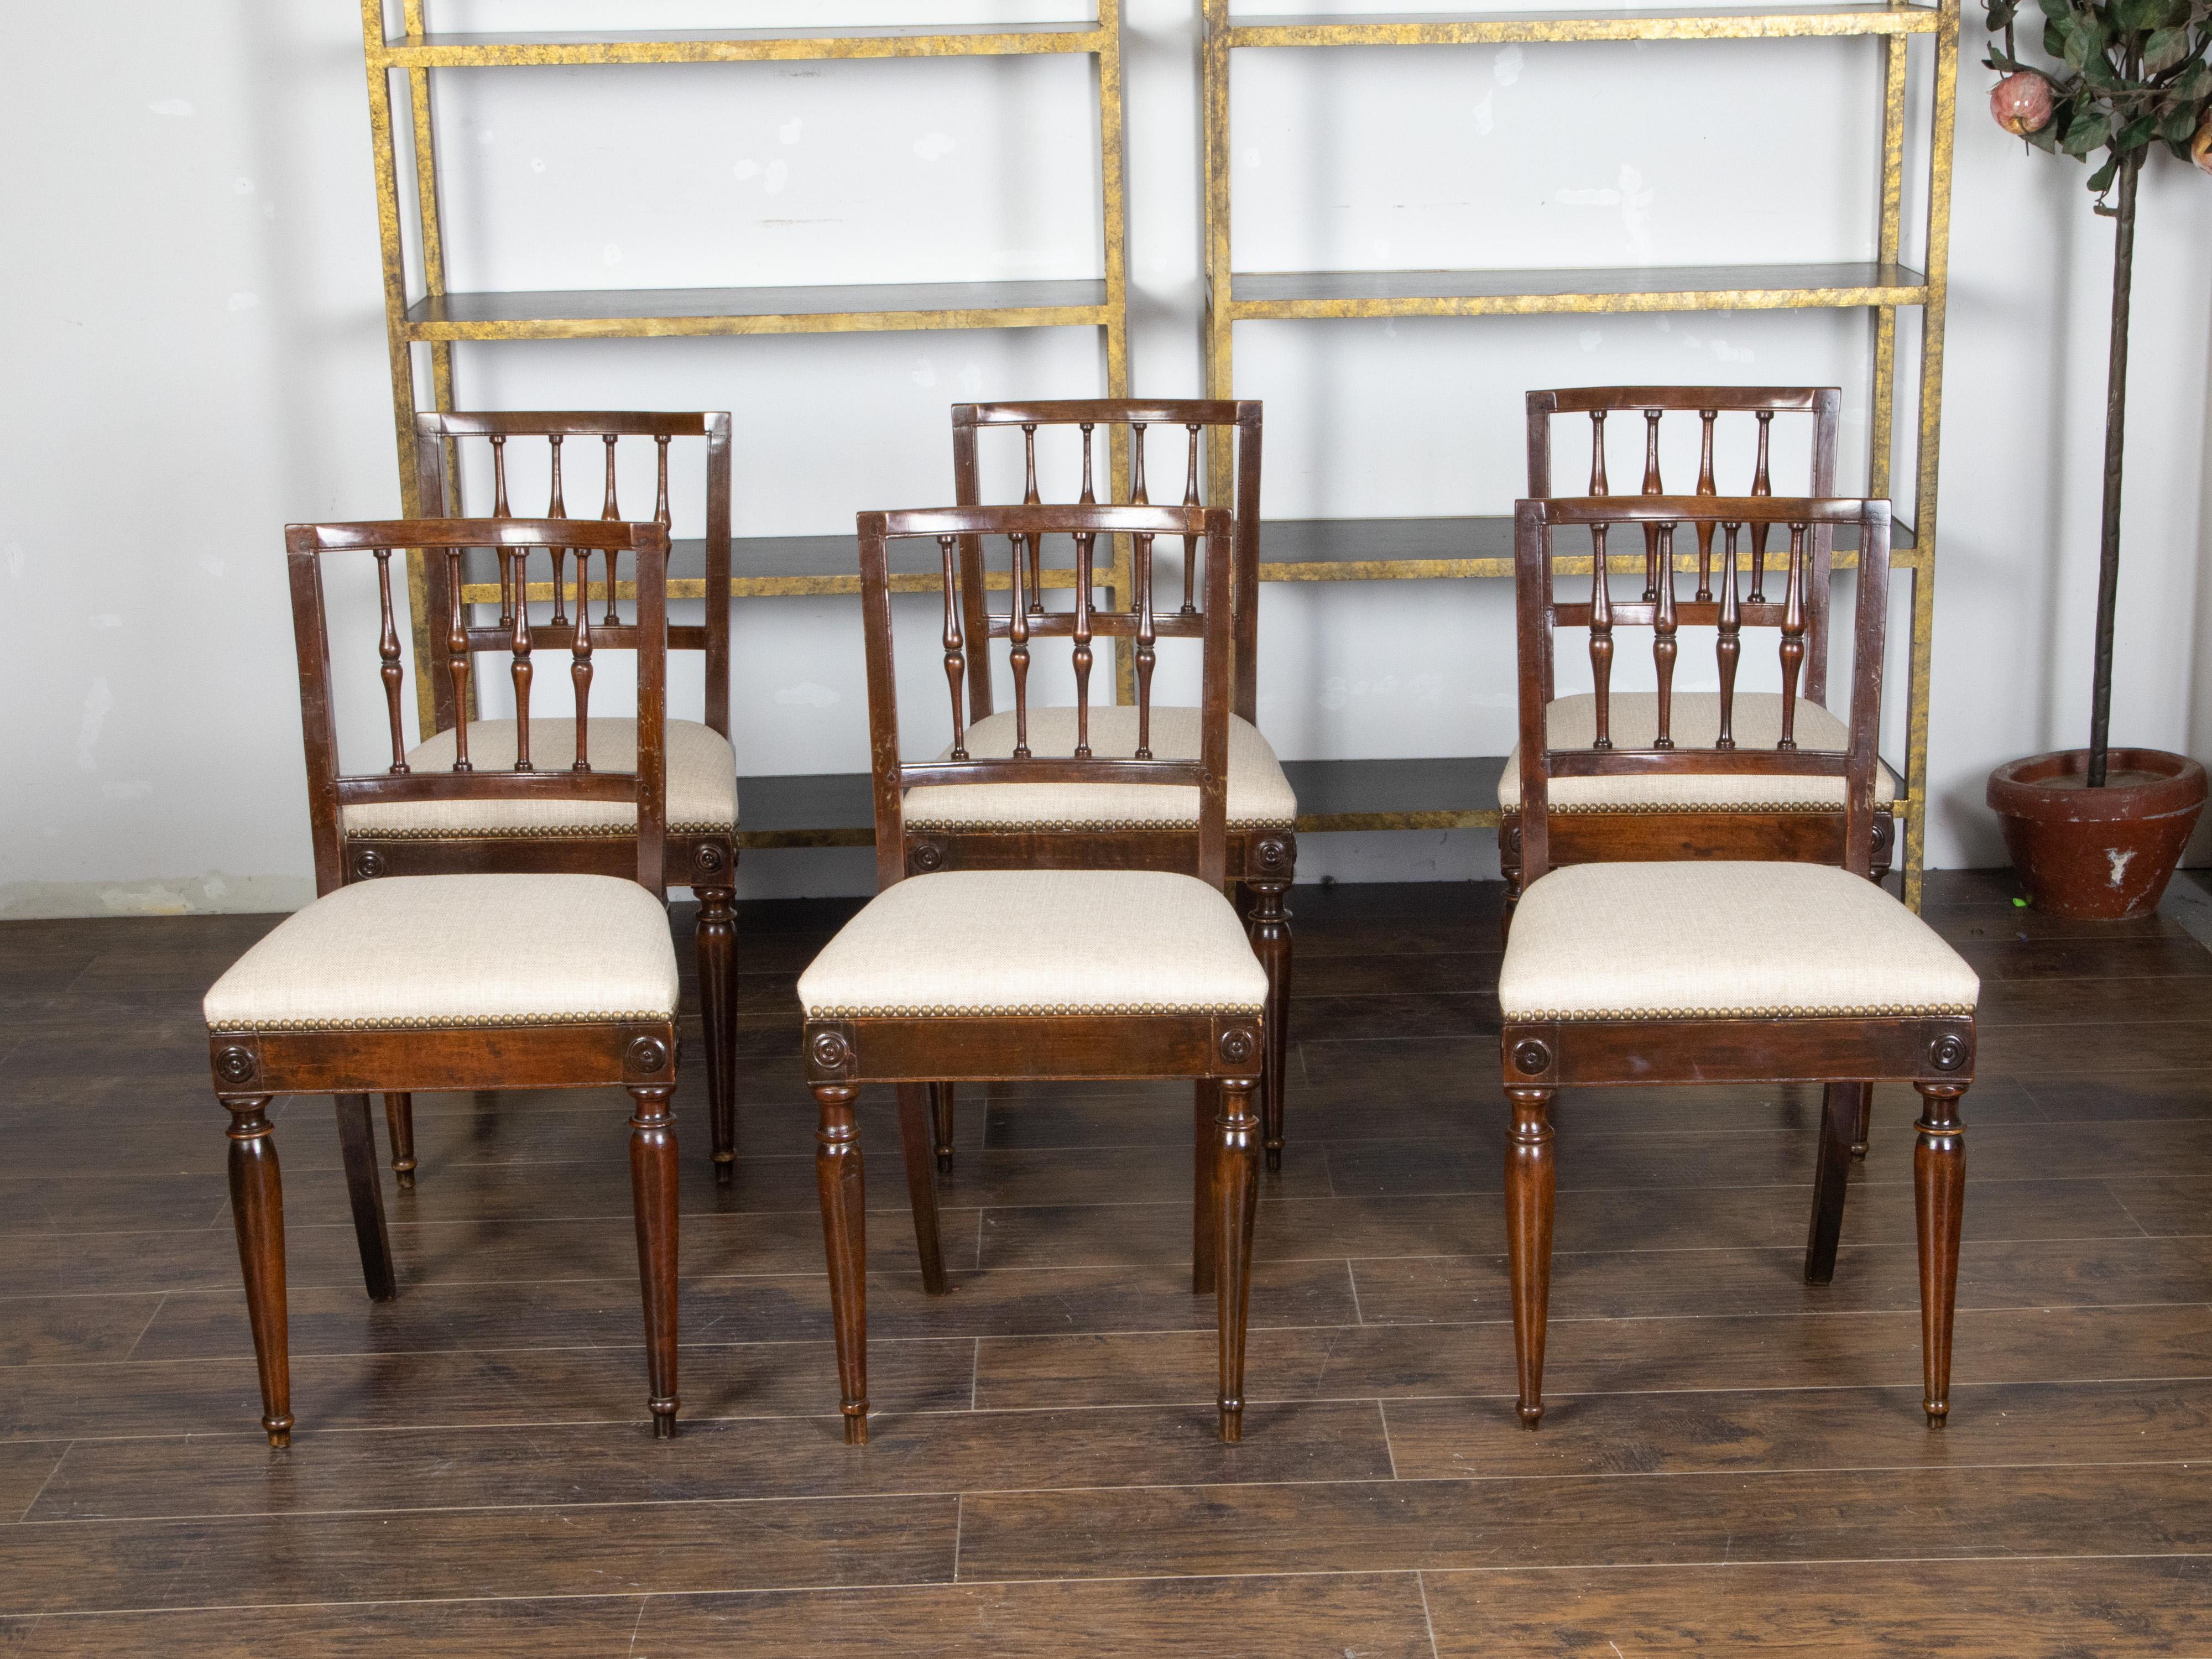 Un ensemble de six chaises de salle à manger italiennes en noyer du début du XIXe siècle, avec dossiers en forme de fuseau, médaillons sculptés et nouveau tissu d'ameublement. Créé en Italie au cours des premières années du XIXe siècle, cet ensemble